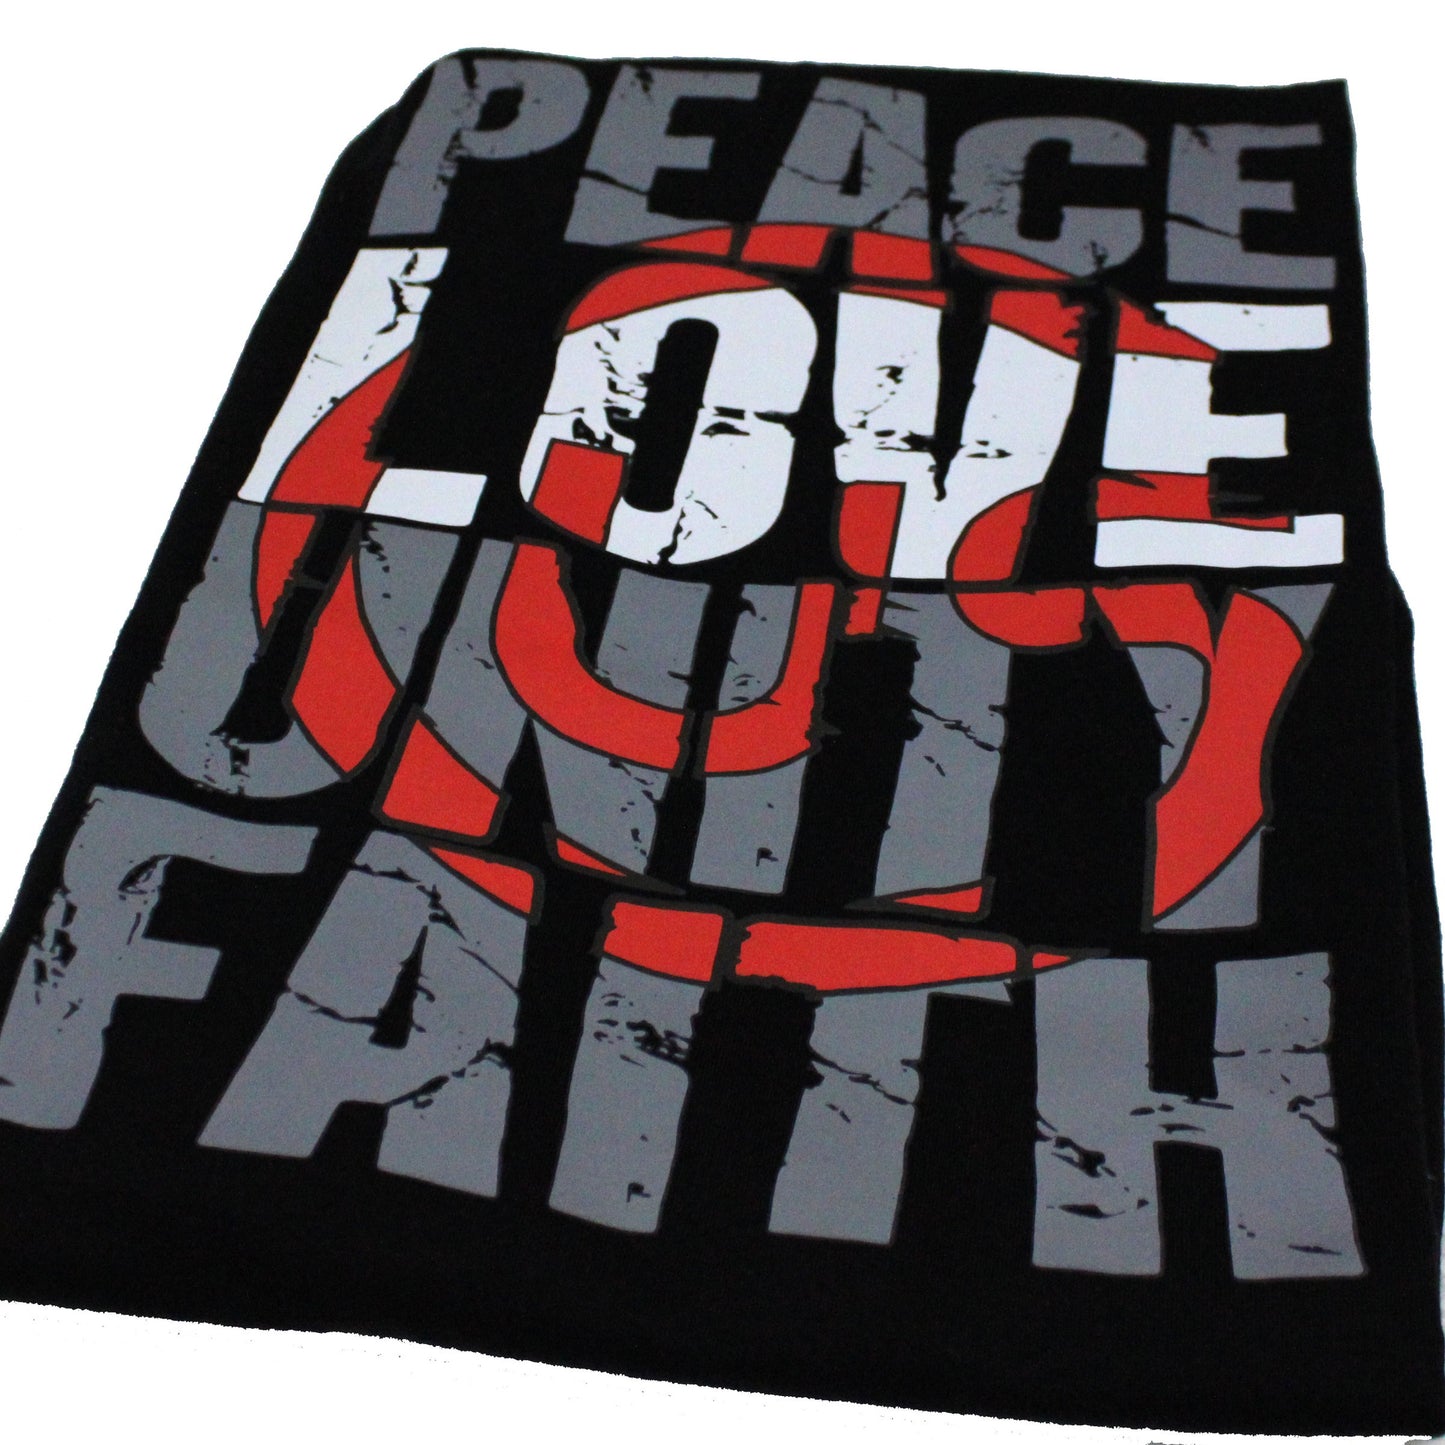 PEACE, LOVE, UNITY, FAITH TEE